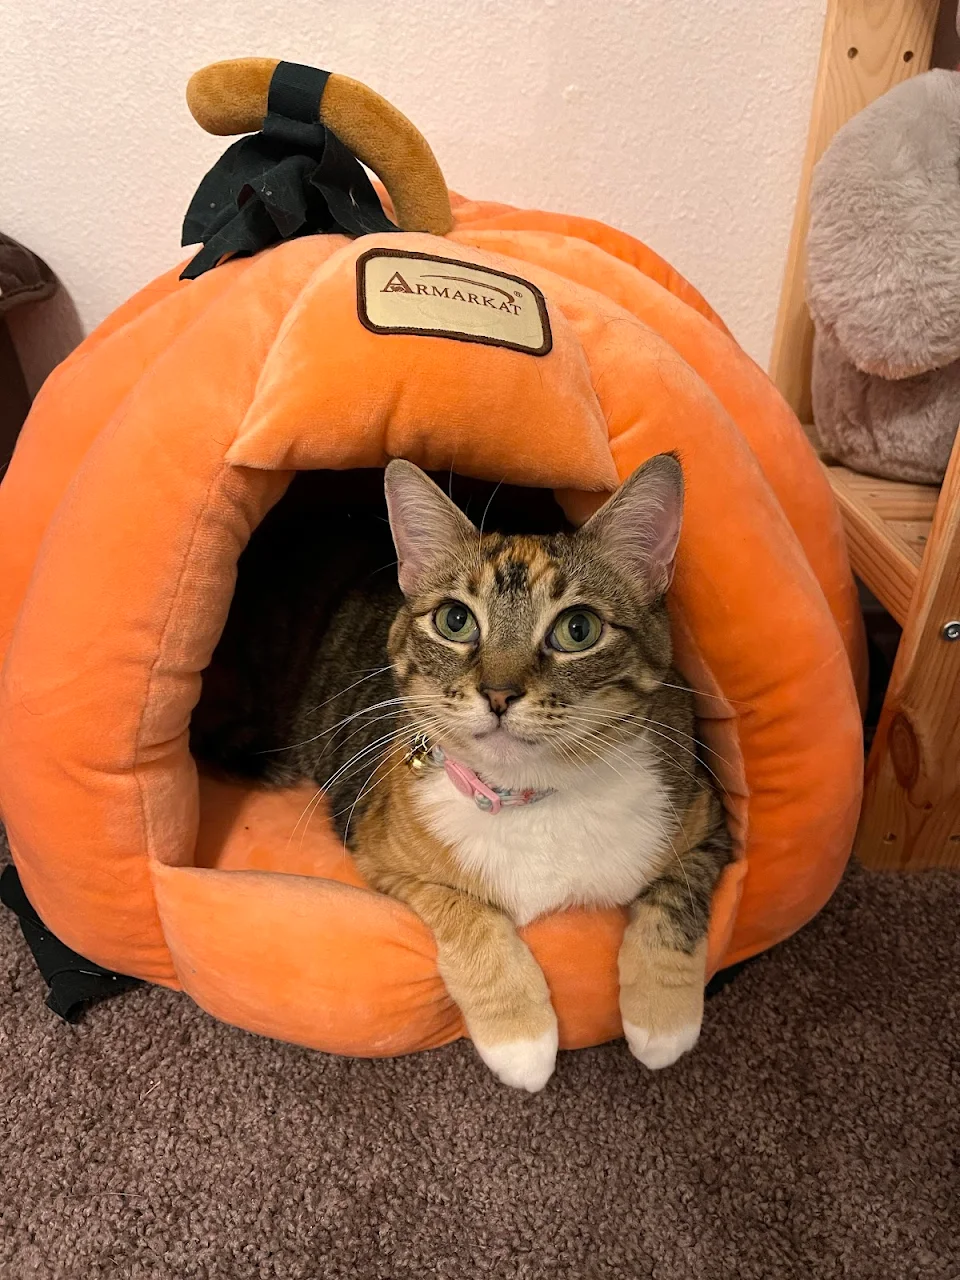 Potion loves her pumpkin bed